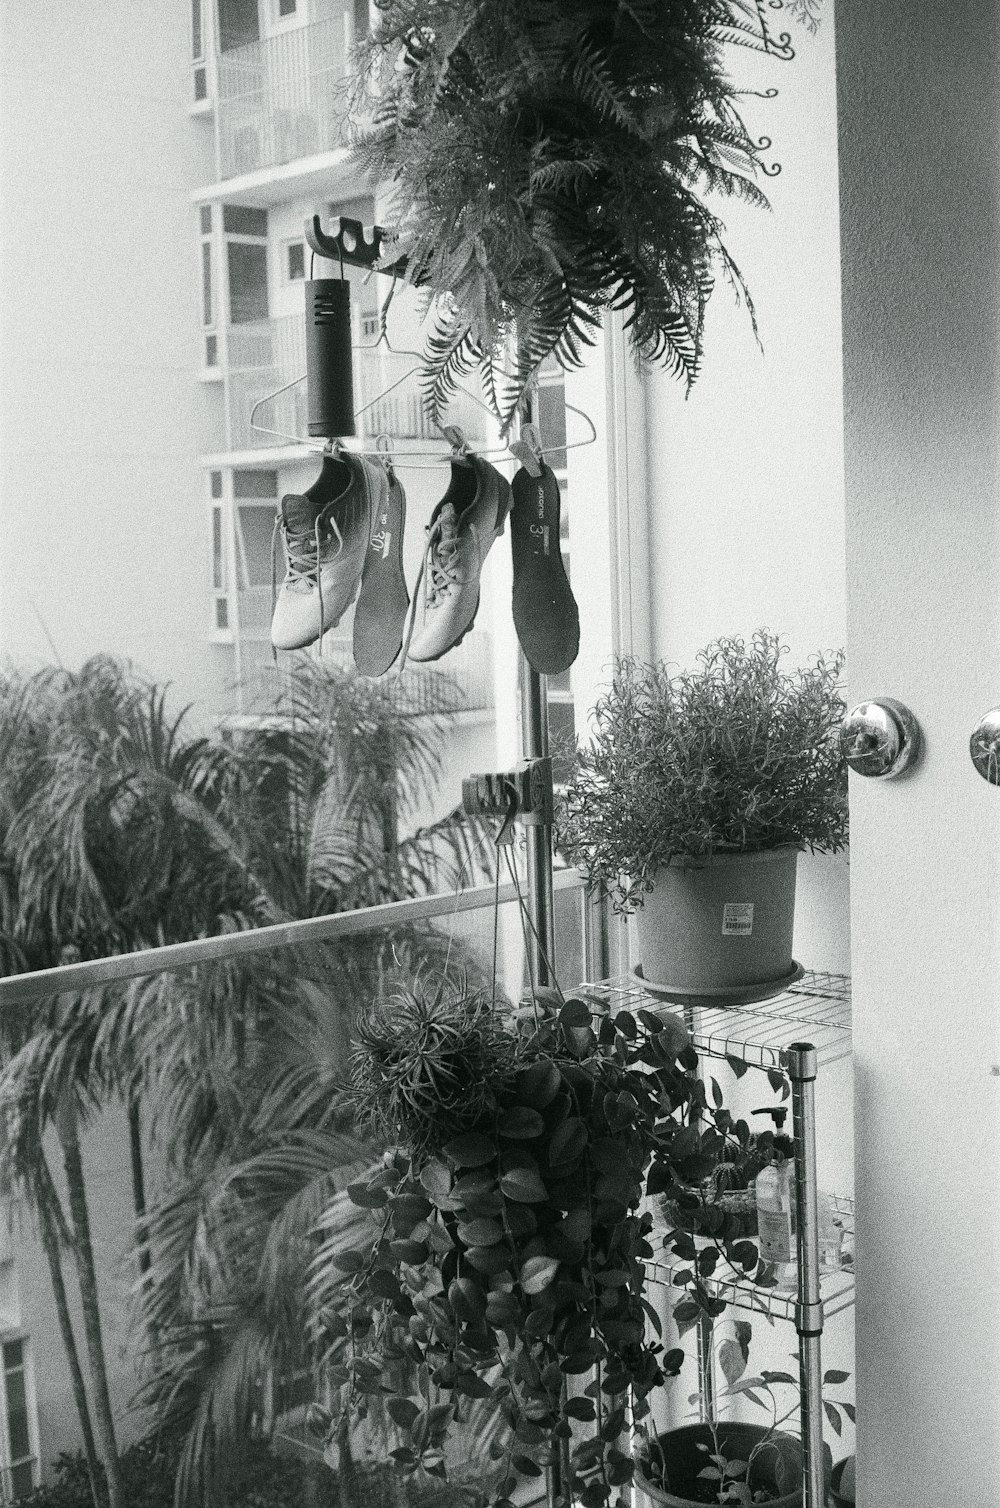 Una foto en blanco y negro de zapatos colgando de una ventana